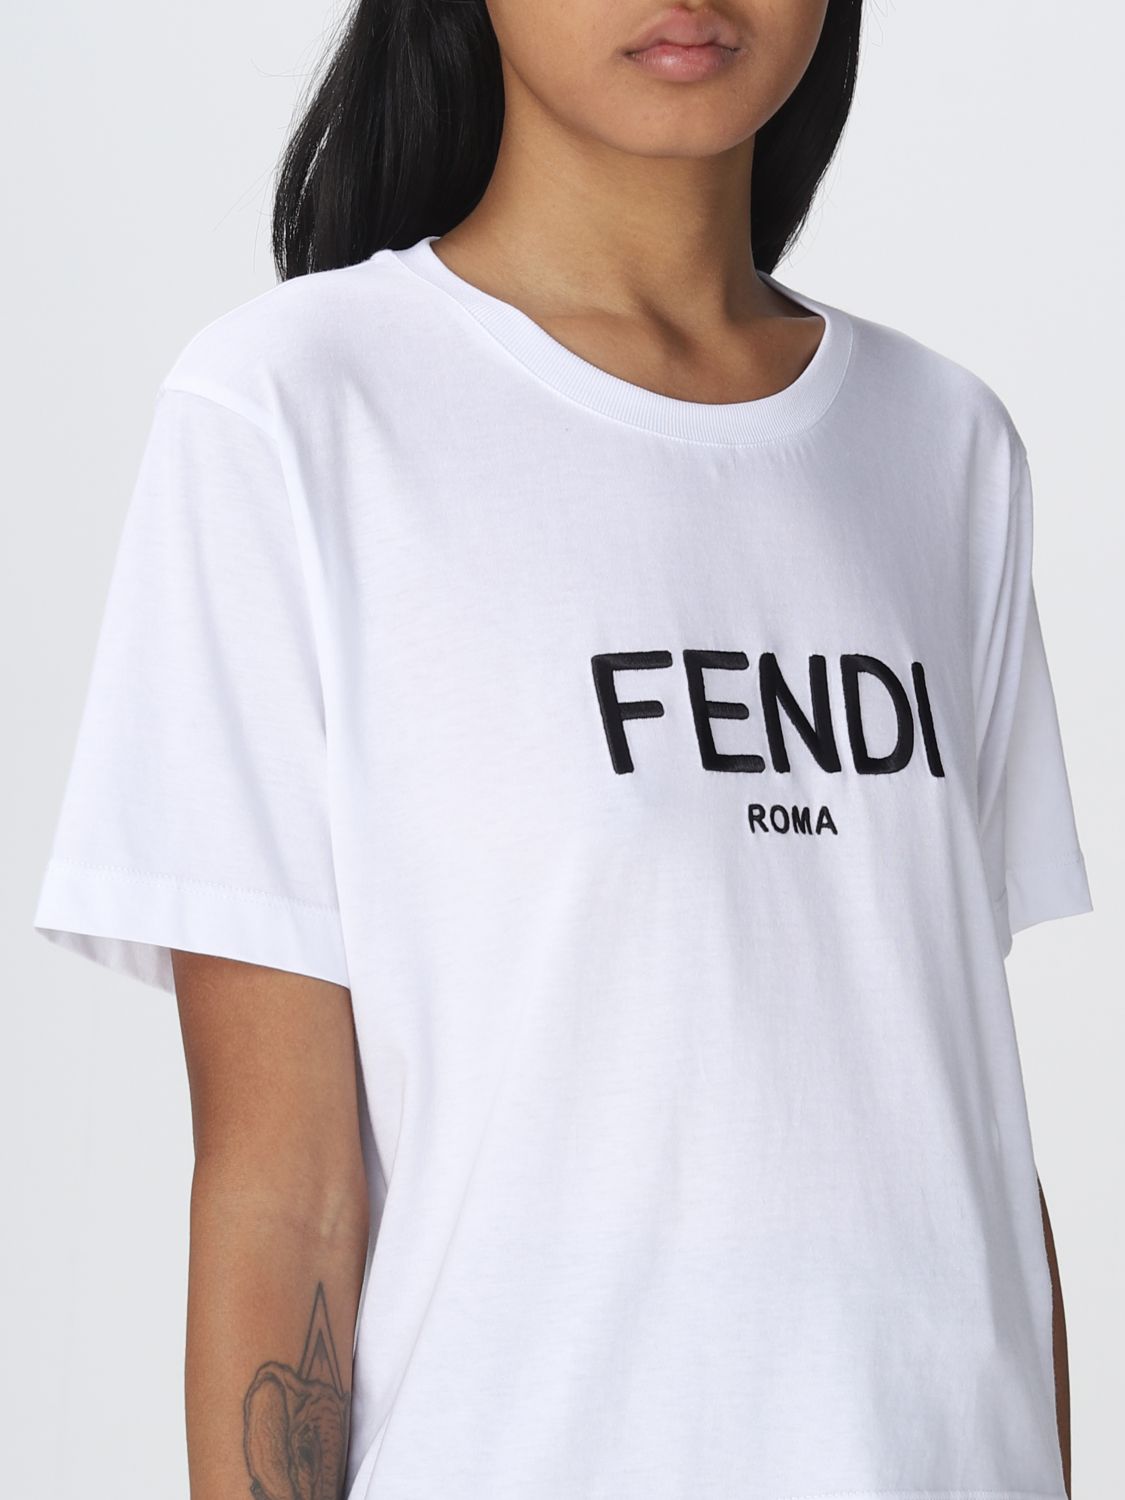 好評お得 FENDI - FENDI 半袖Tシャツ JFI252 キッズ ホワイト size10a